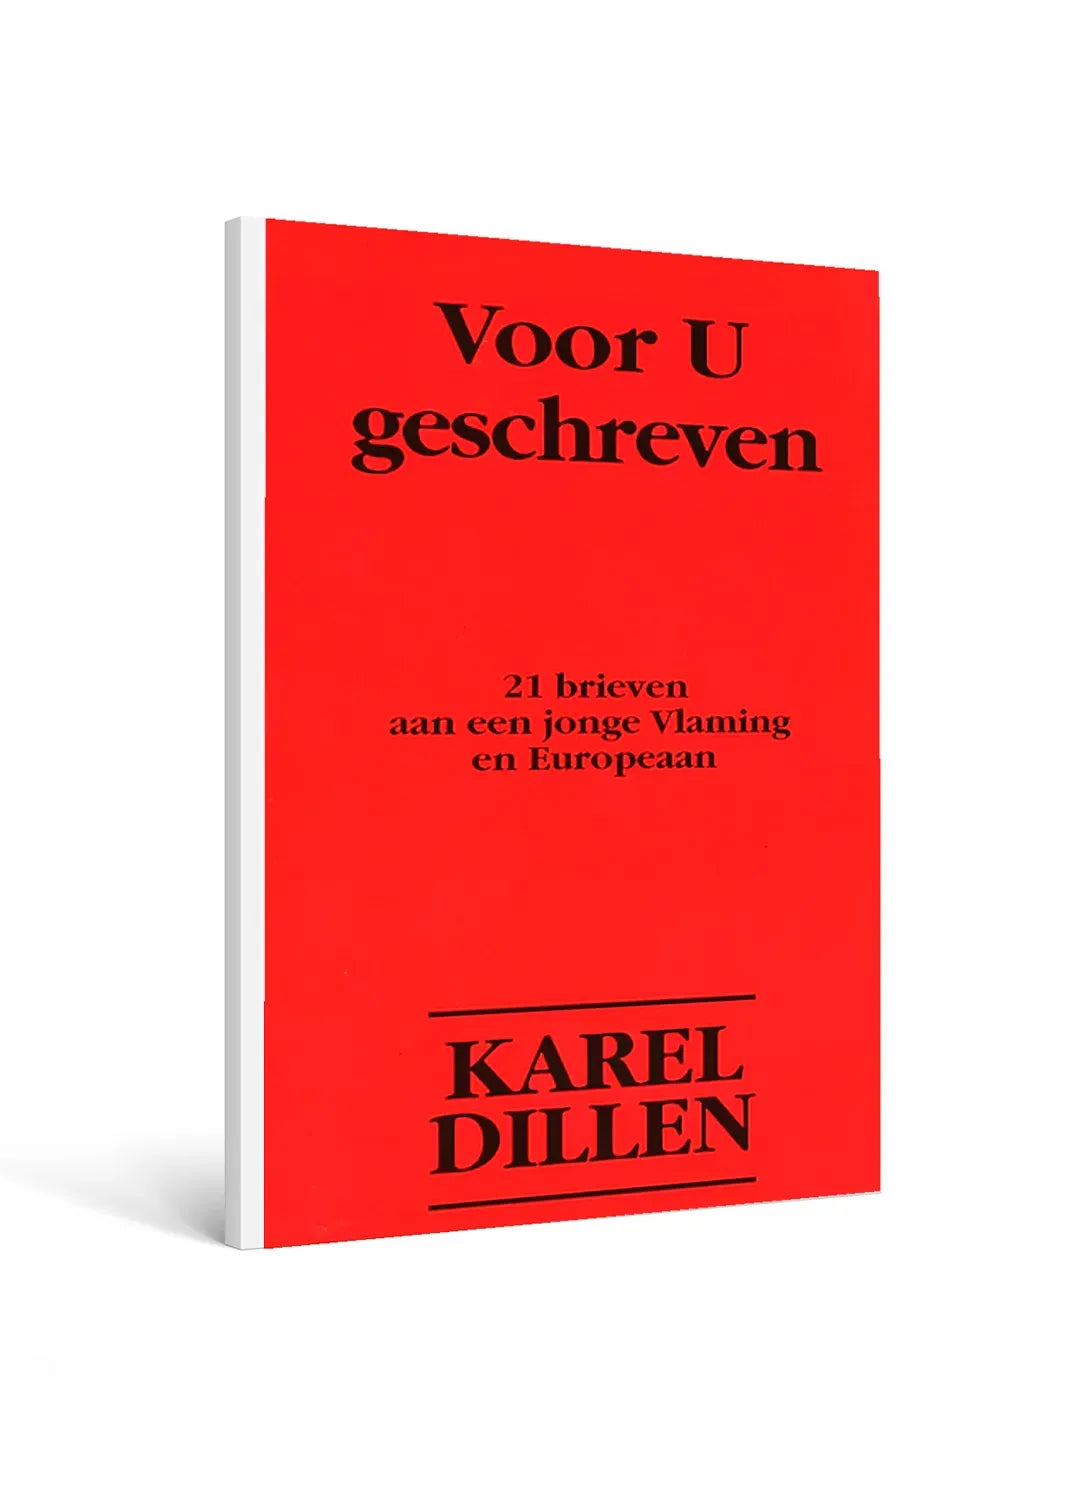 Voor u geschreven - Karel Dillen